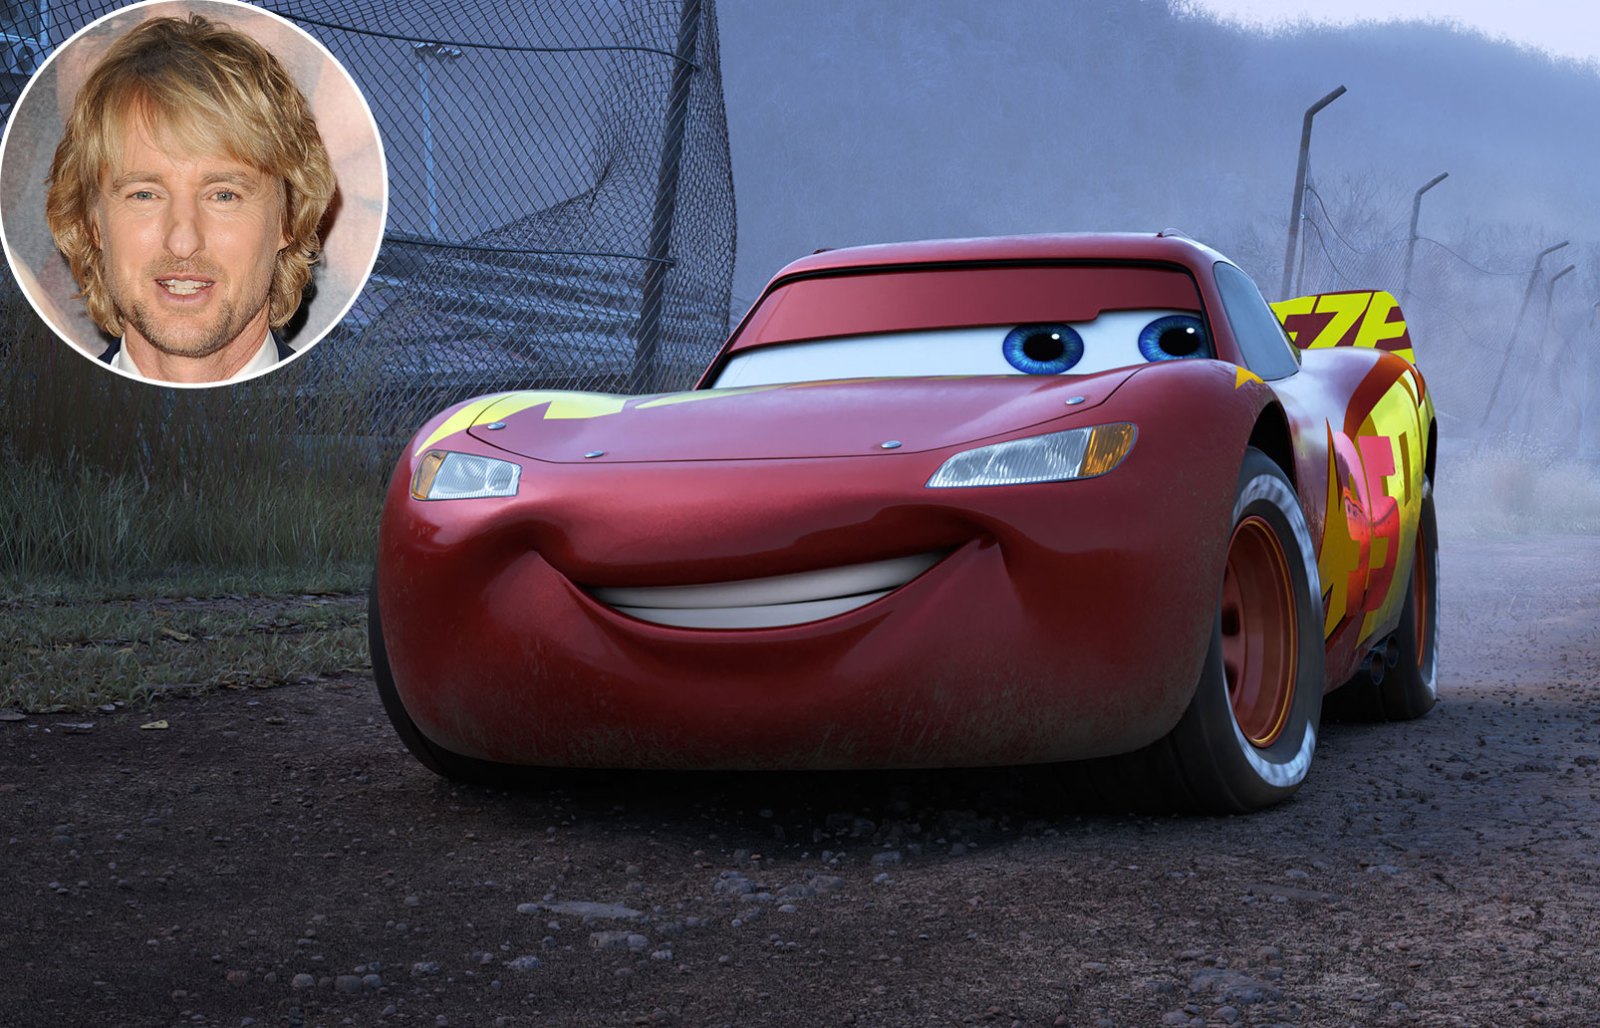 Owen Wilson Cars Lightning McQueen Disney and Pixar Characters